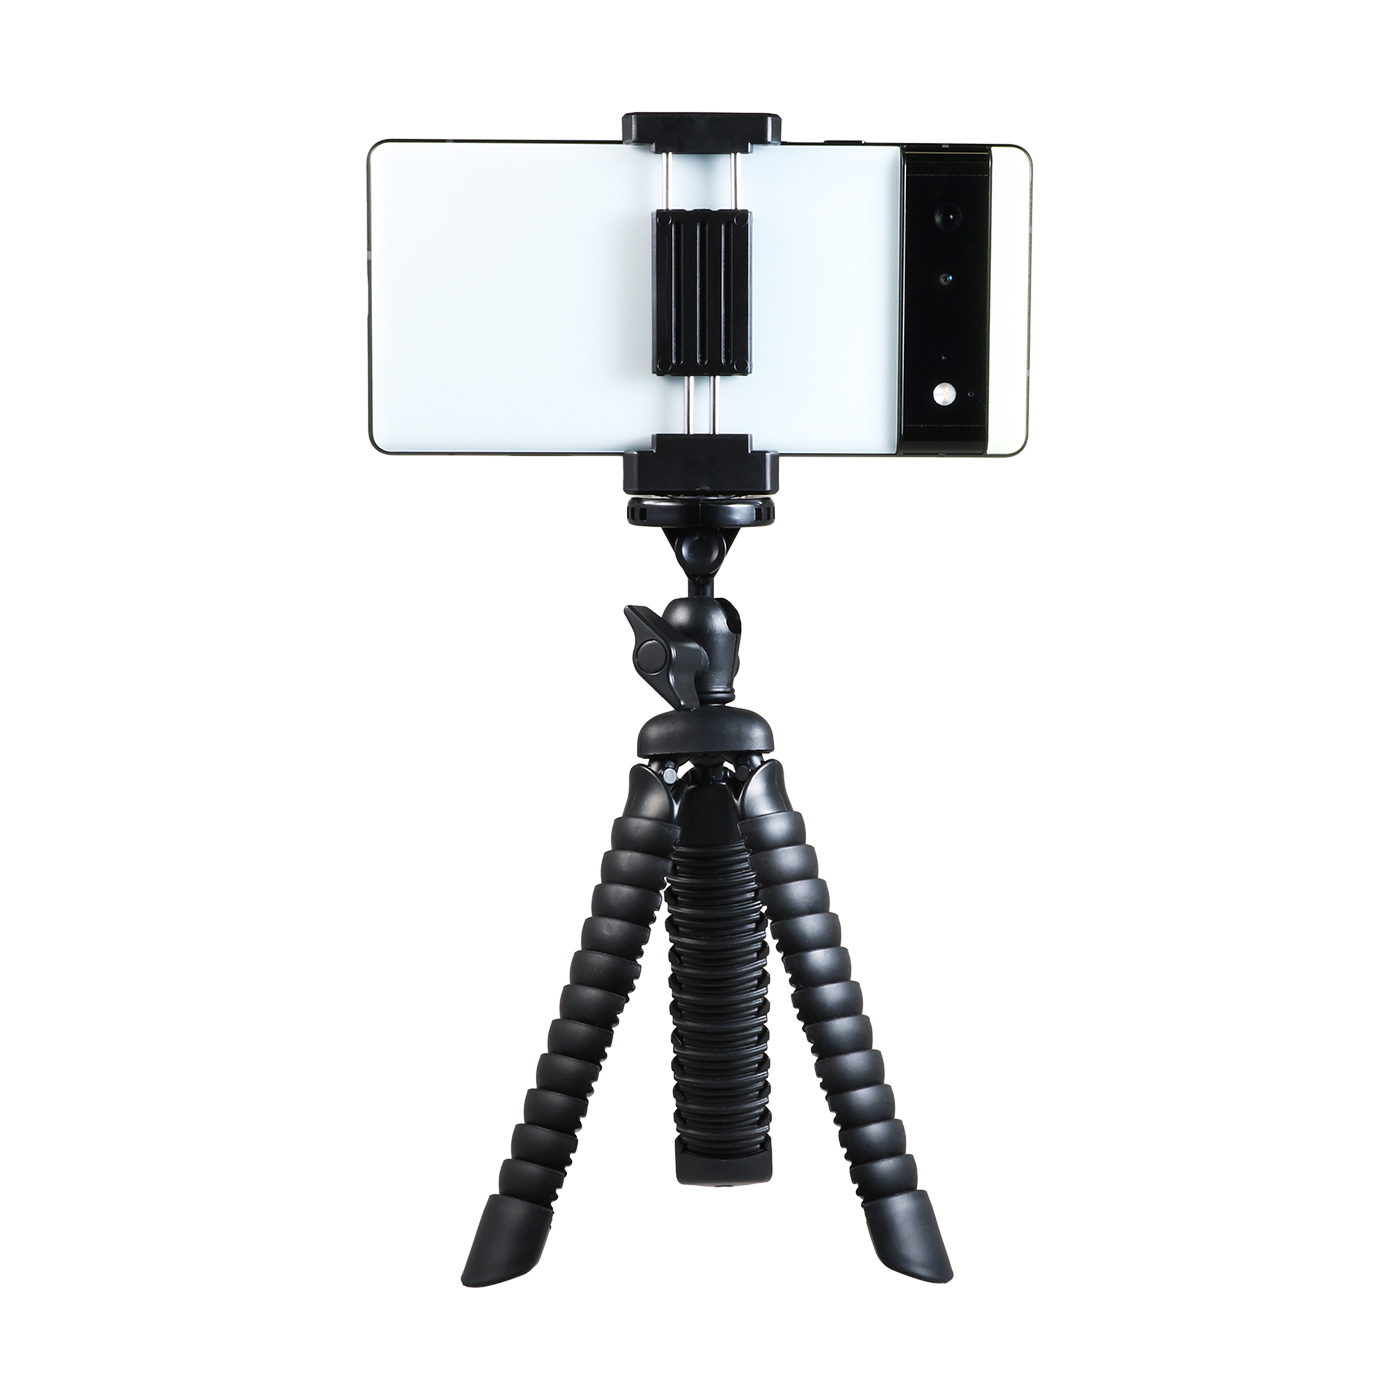  スマホ 2段伸縮可 カメラ 携帯 軽量 自撮り 撮影 ミニ 三脚